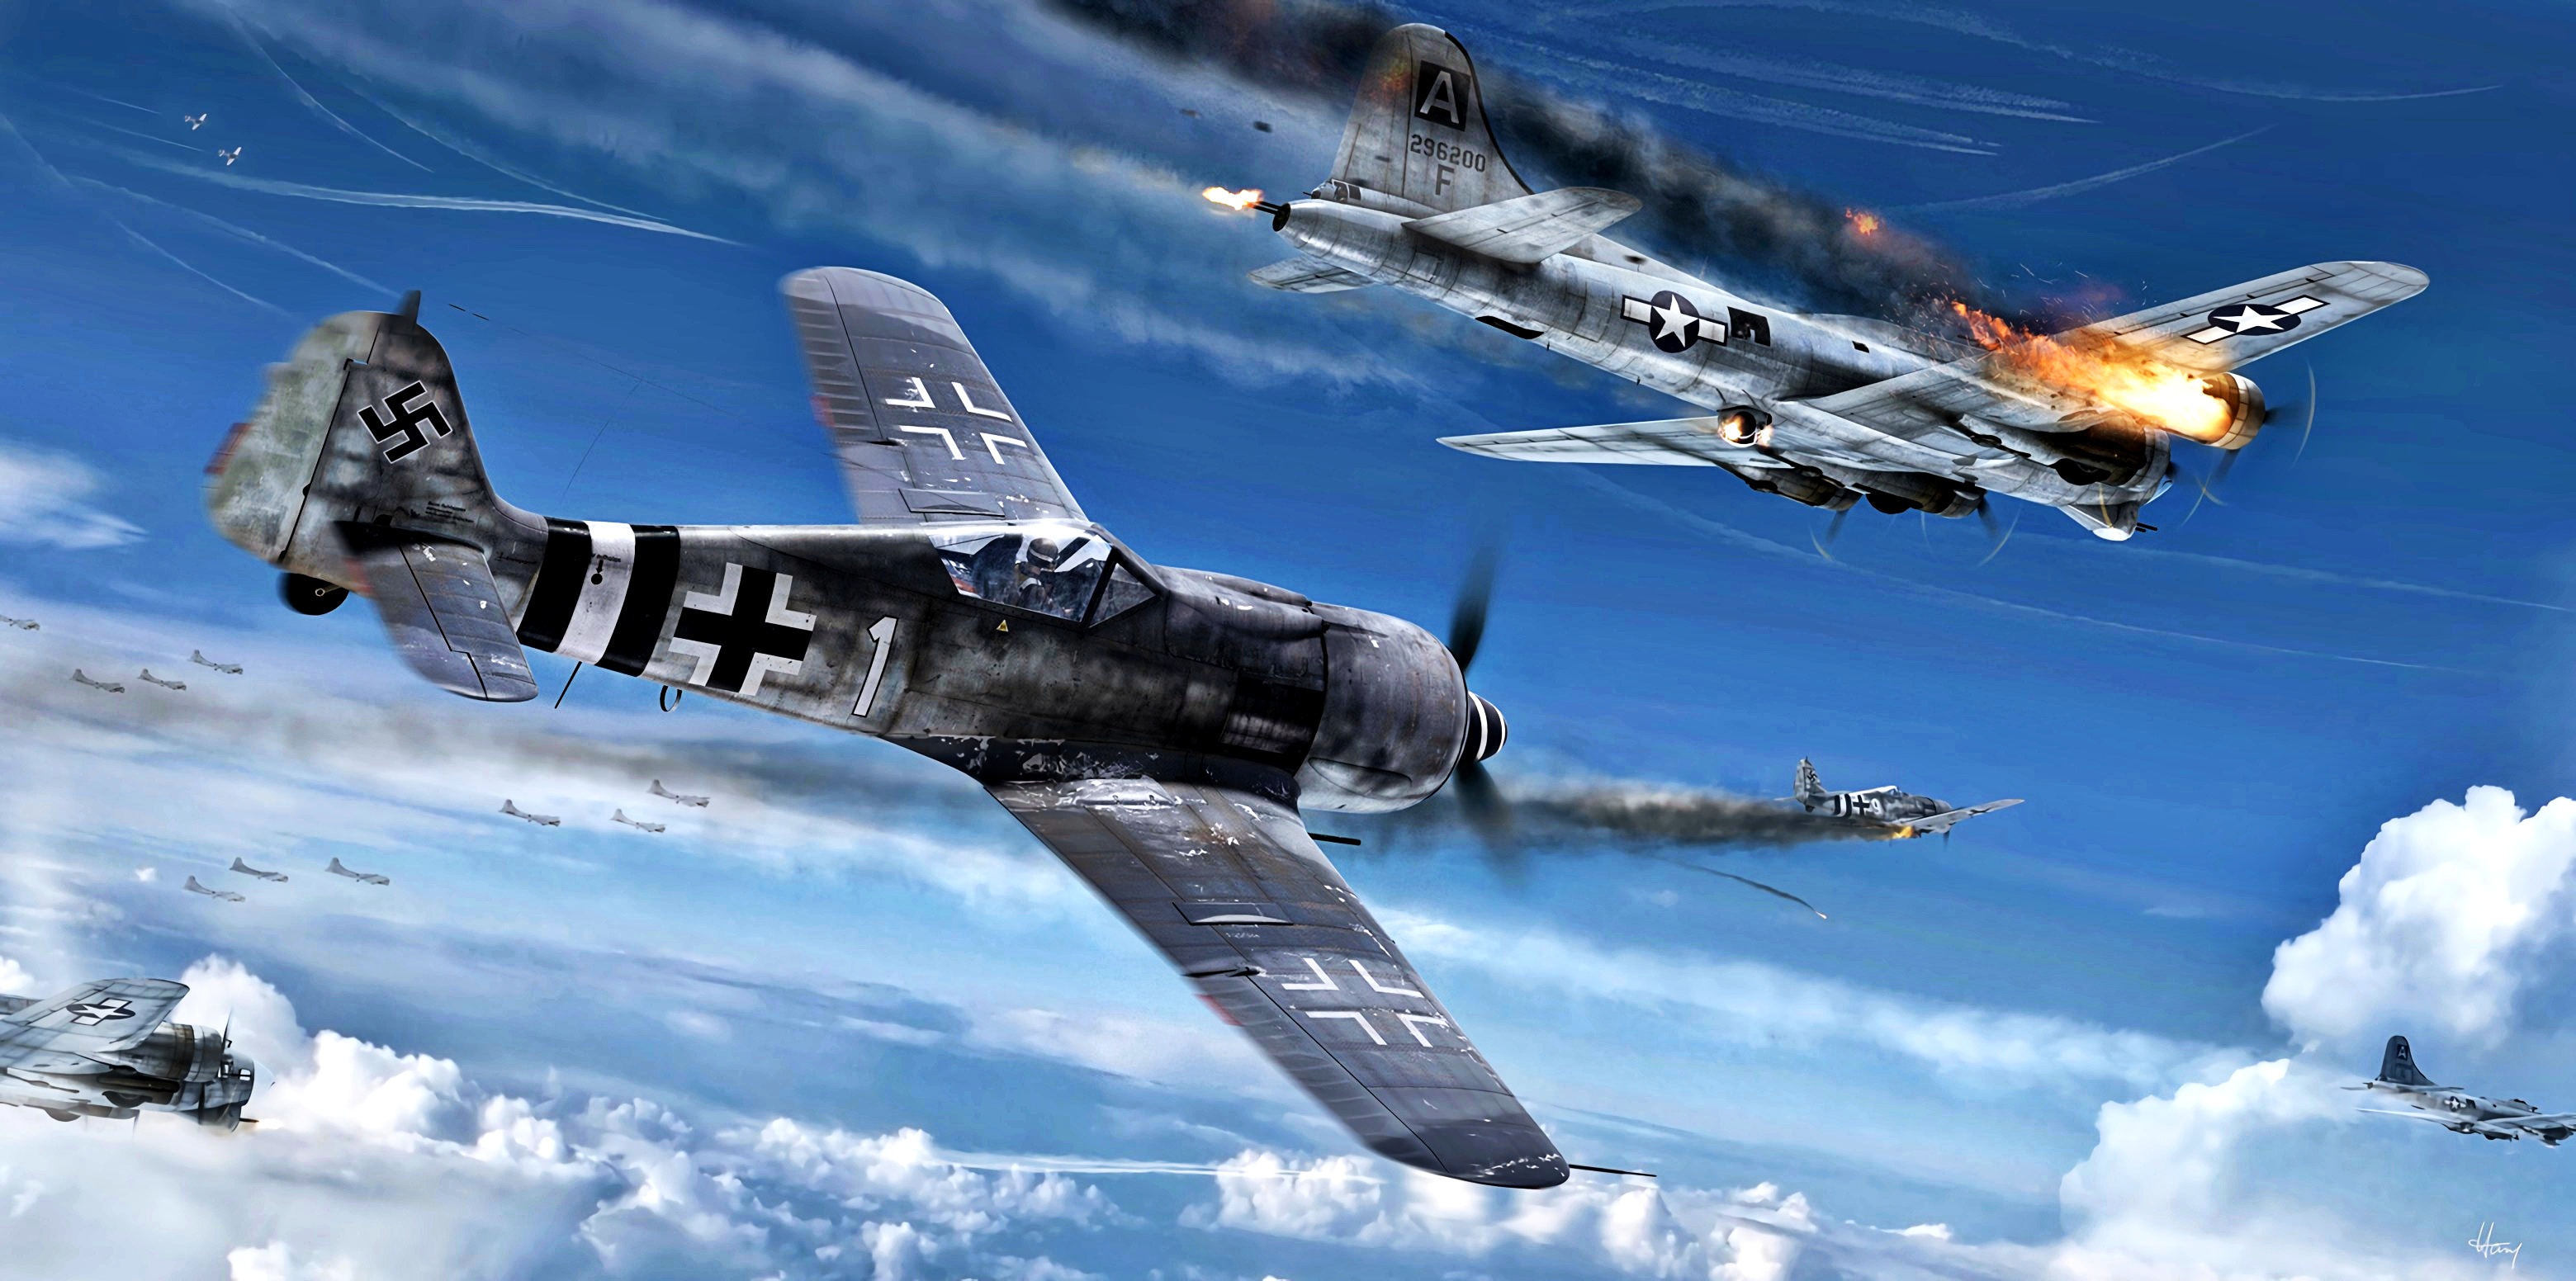 Focke Wulf Fw HD Wallpaper Background Image